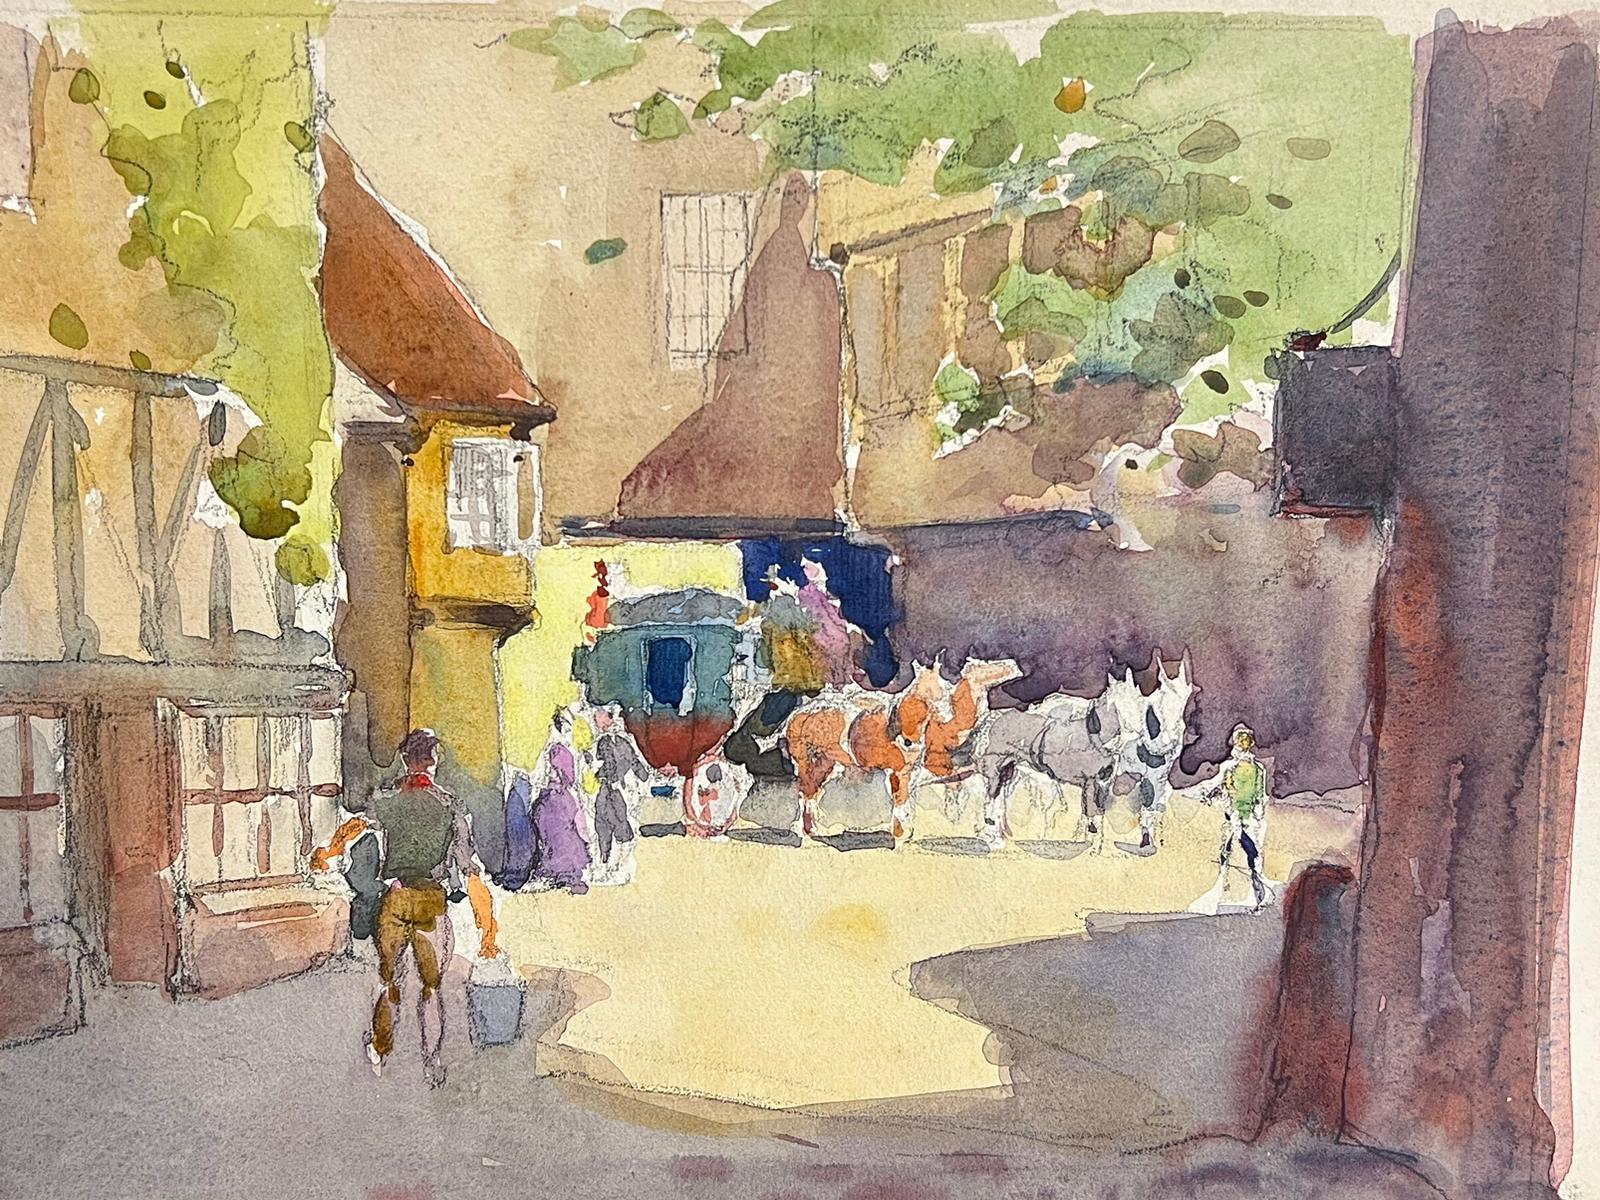 Horse & Carriage in Old English Village Lane, britisches Gemälde des 20. Jahrhunderts (Impressionismus), Art, von Frank Duffield